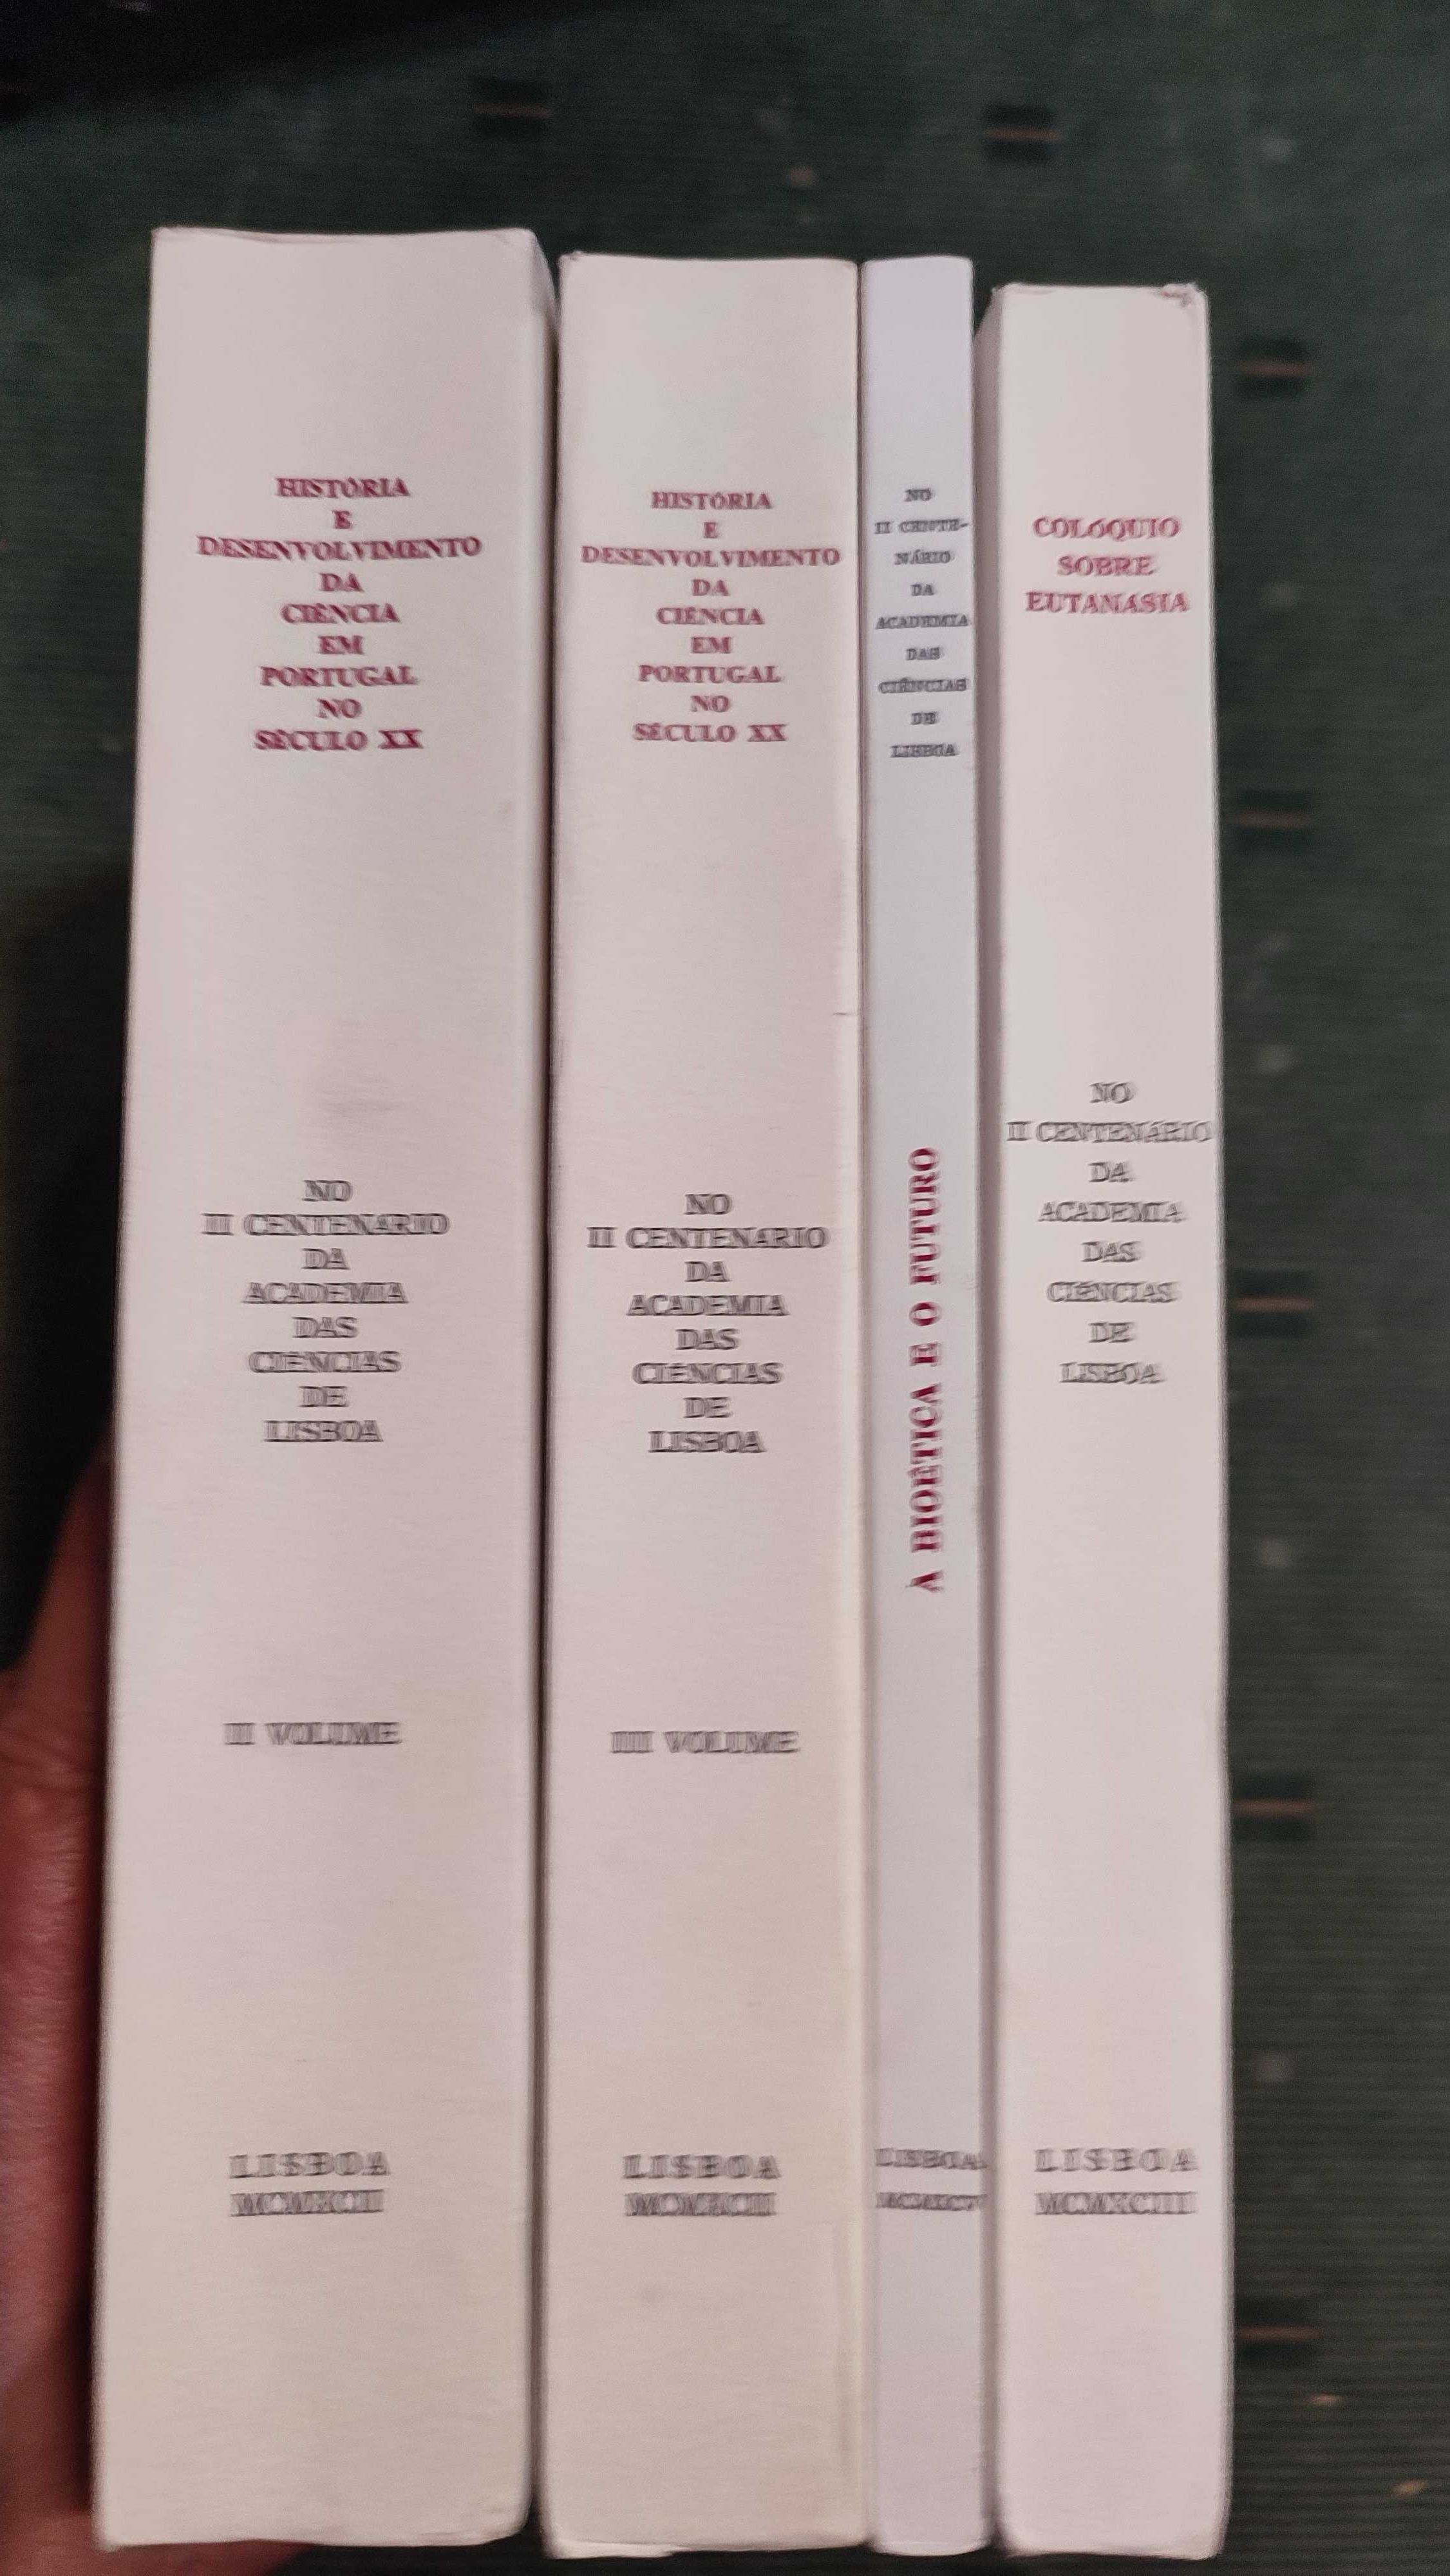 4 Volumes Publicações do II Centenário da Academia das Ciências Lisboa